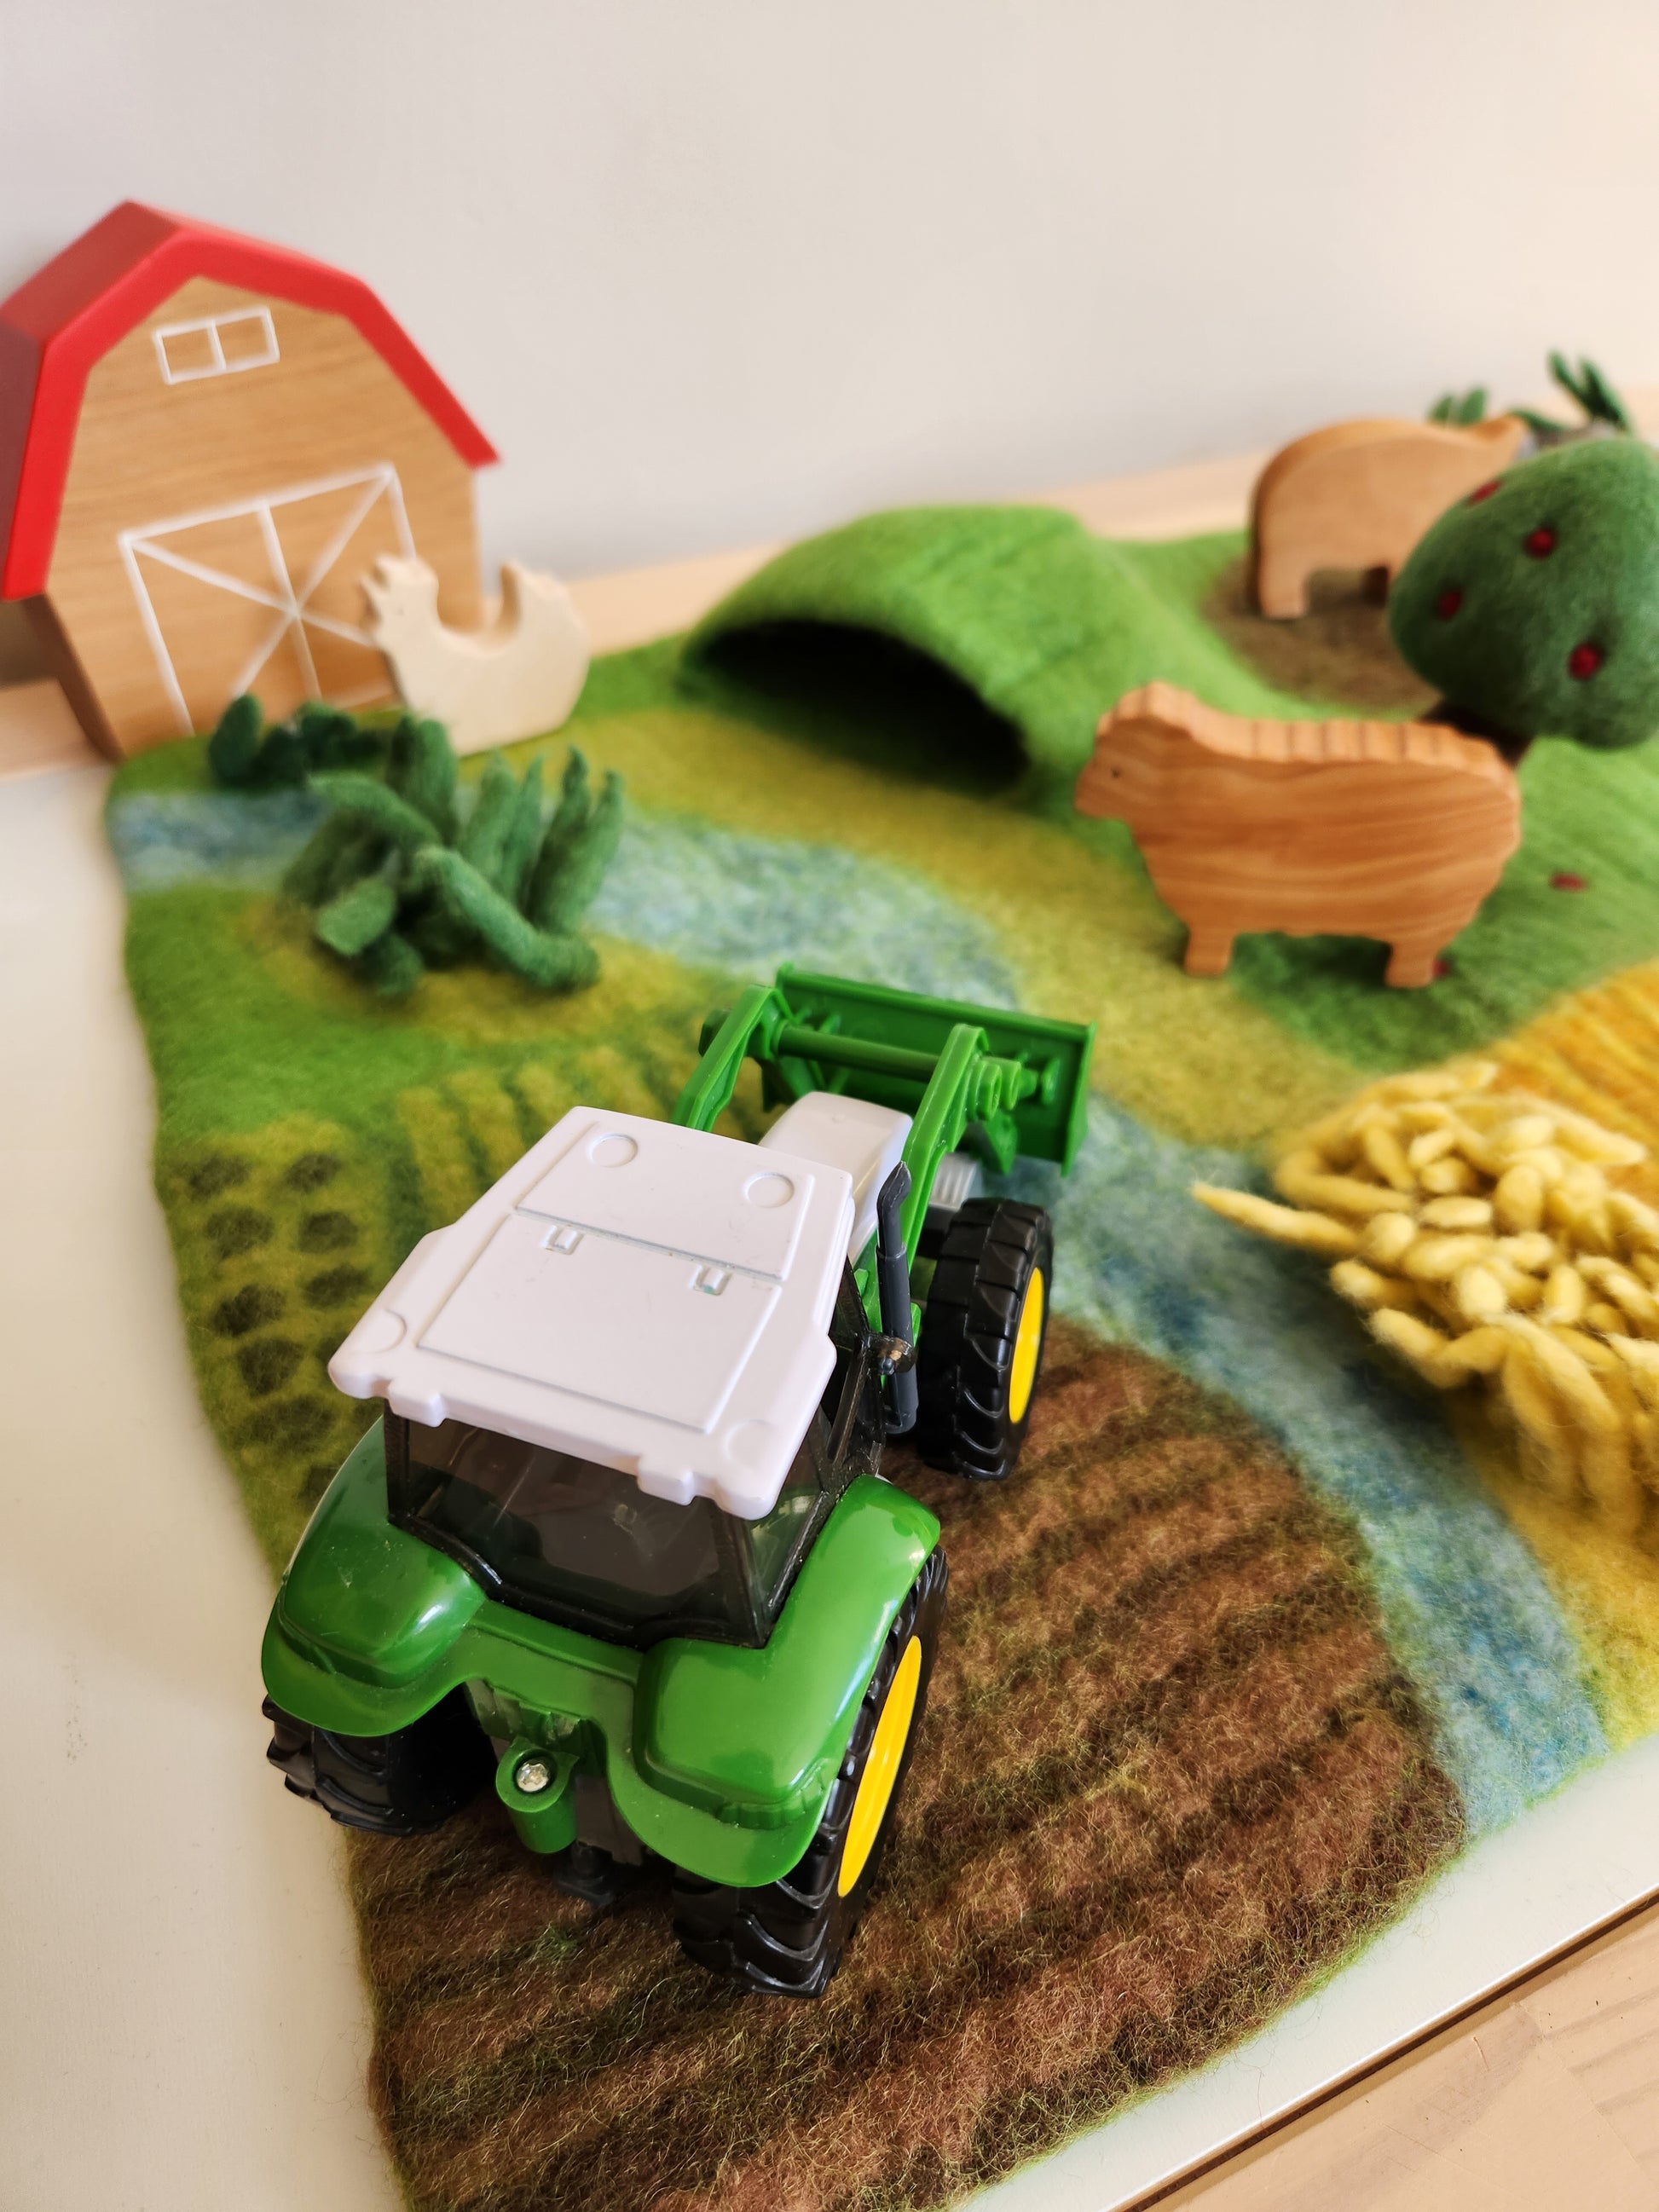 Felt Farmyard Play Scape with farm toys